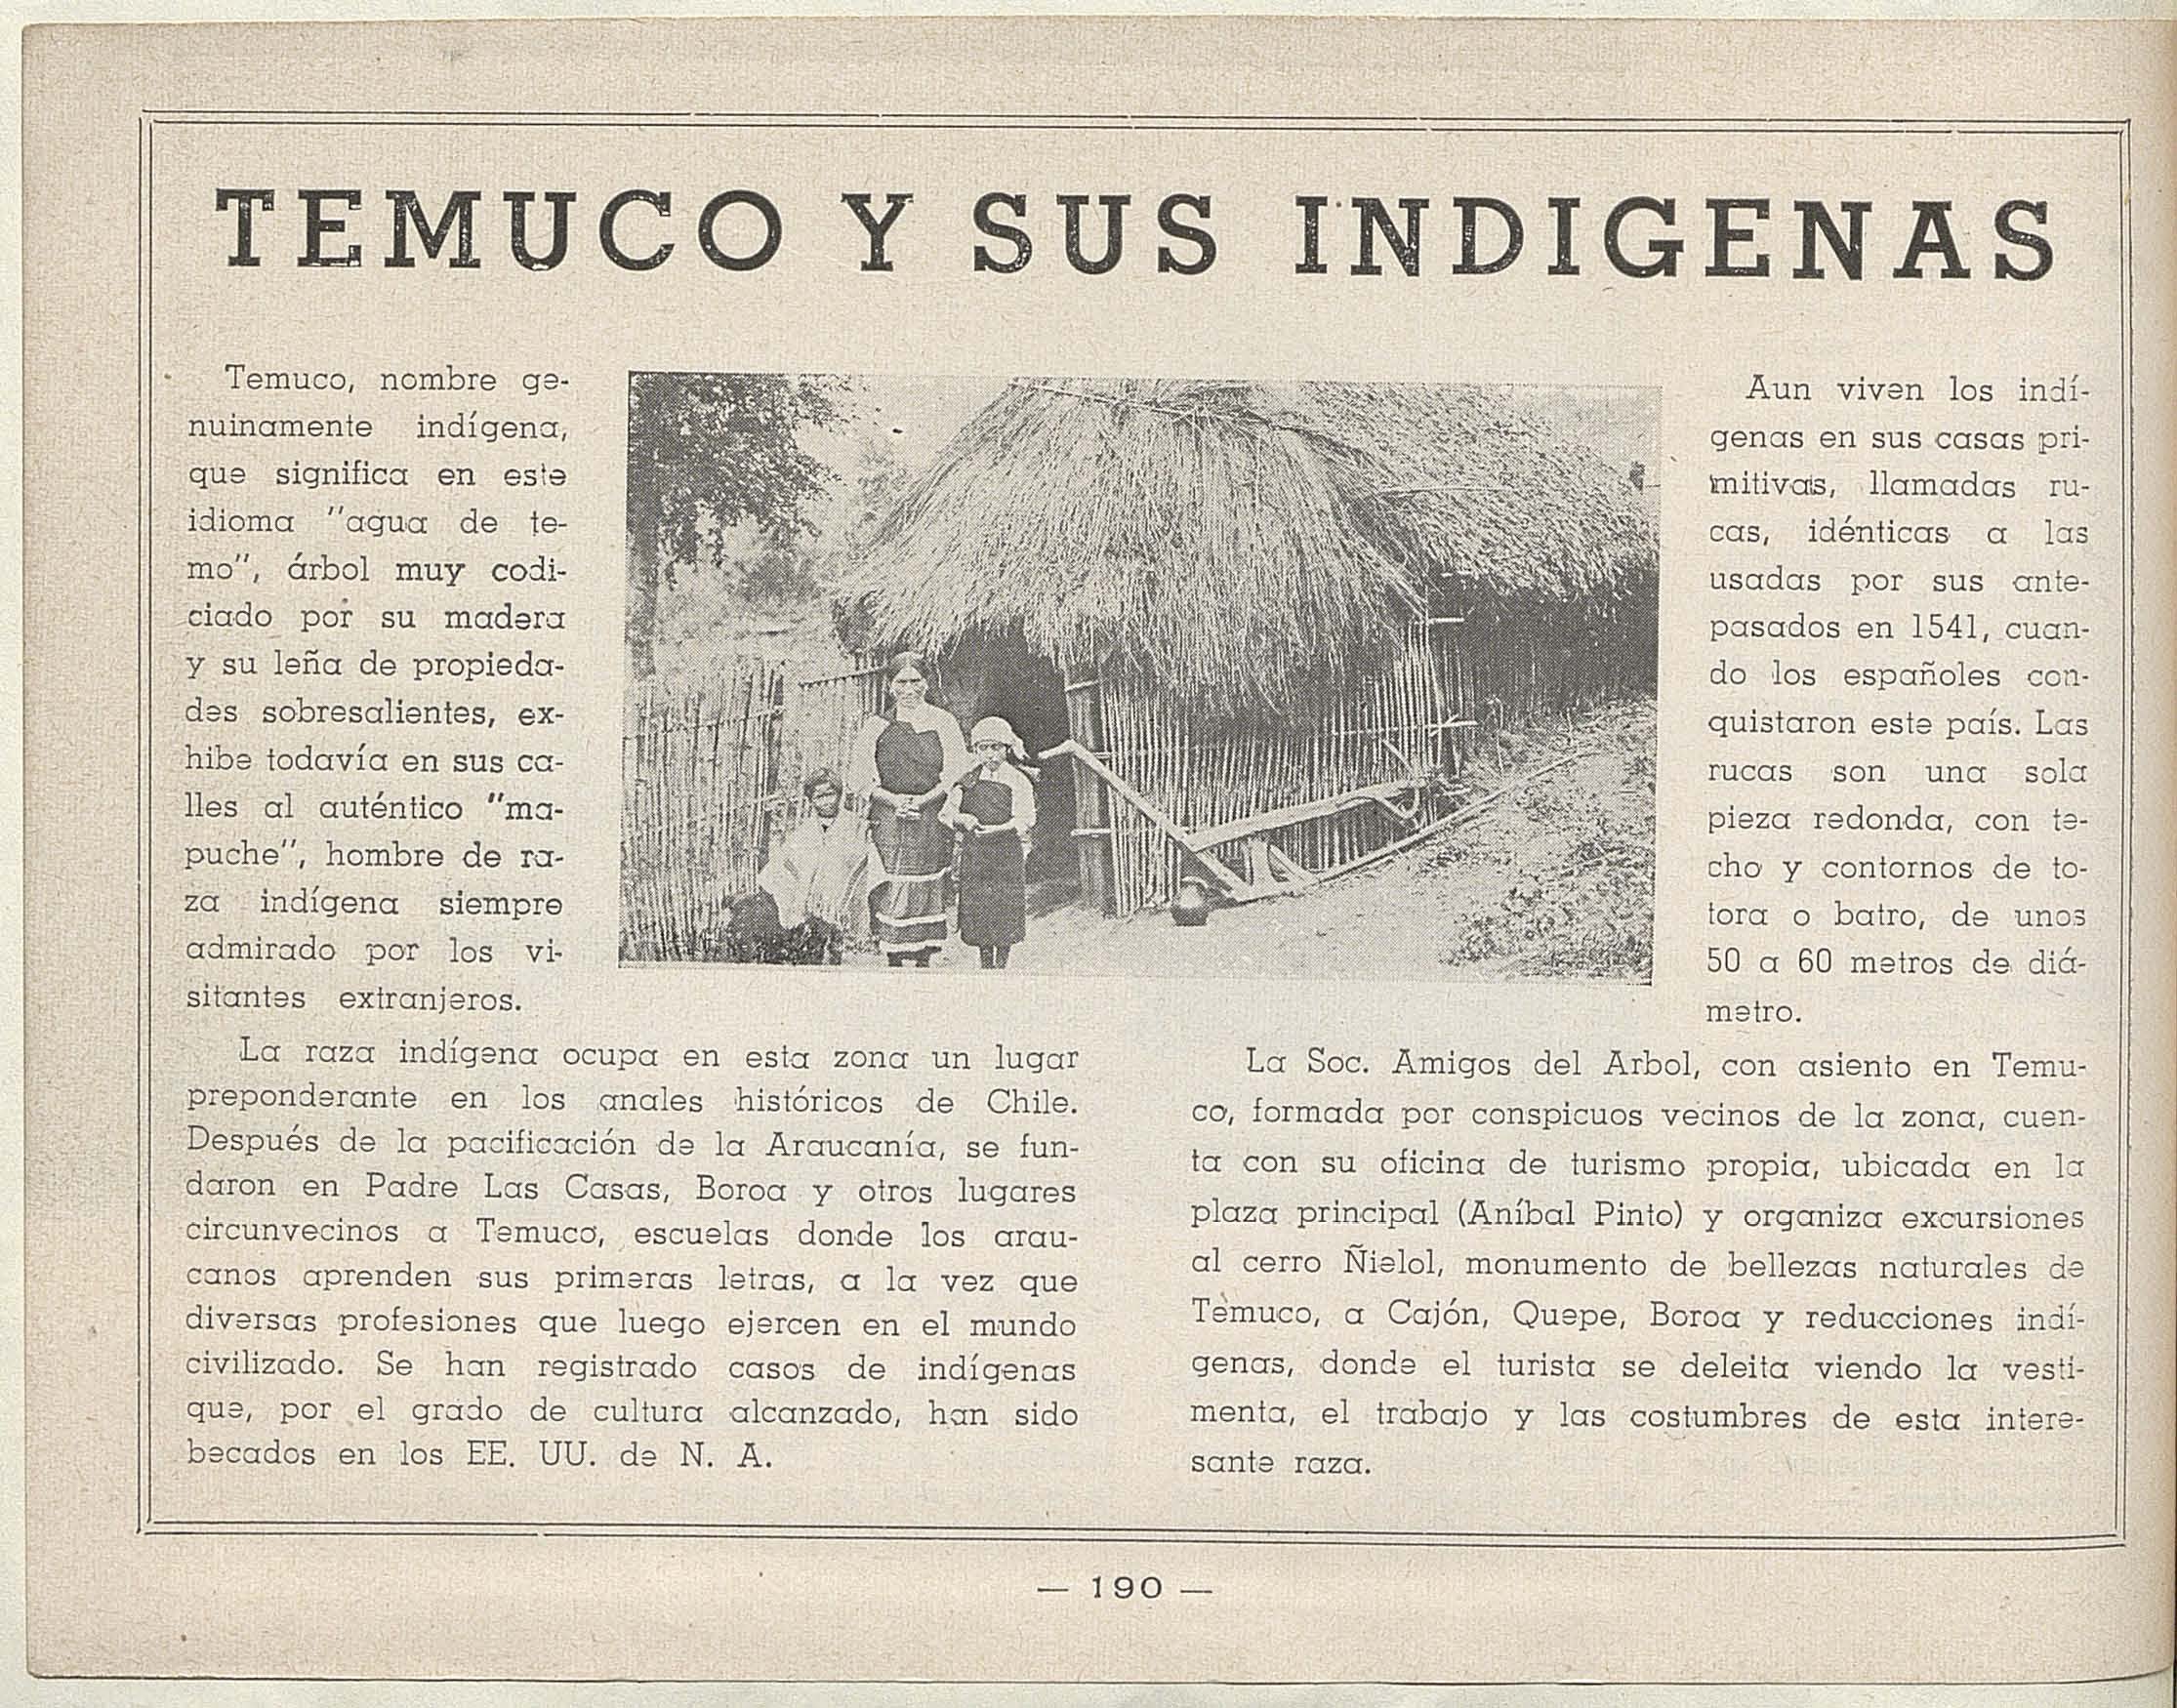 Temuco y sus indígenas